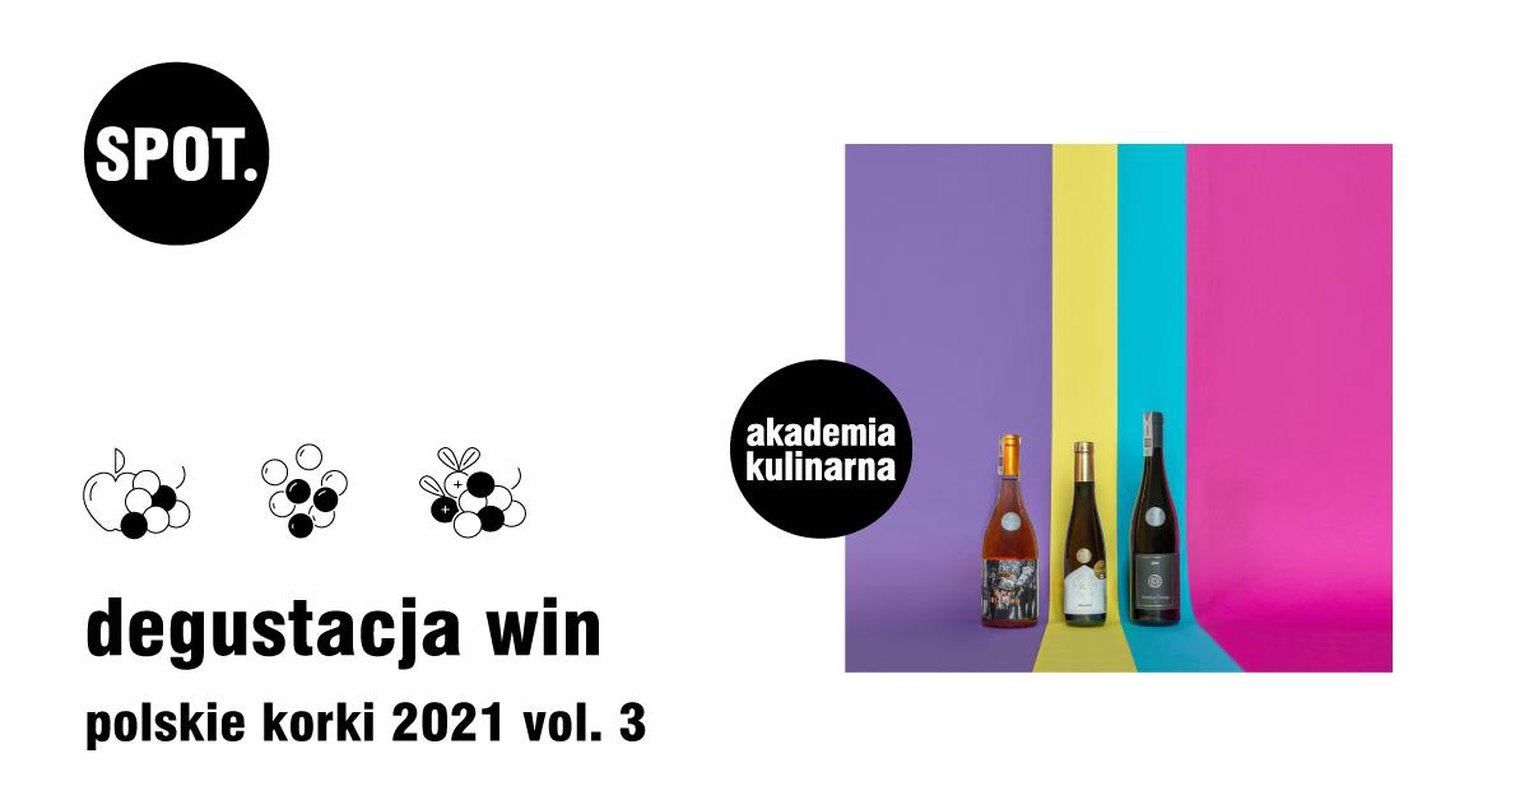 Degustacja win_polskie korki 2021 vol. 3